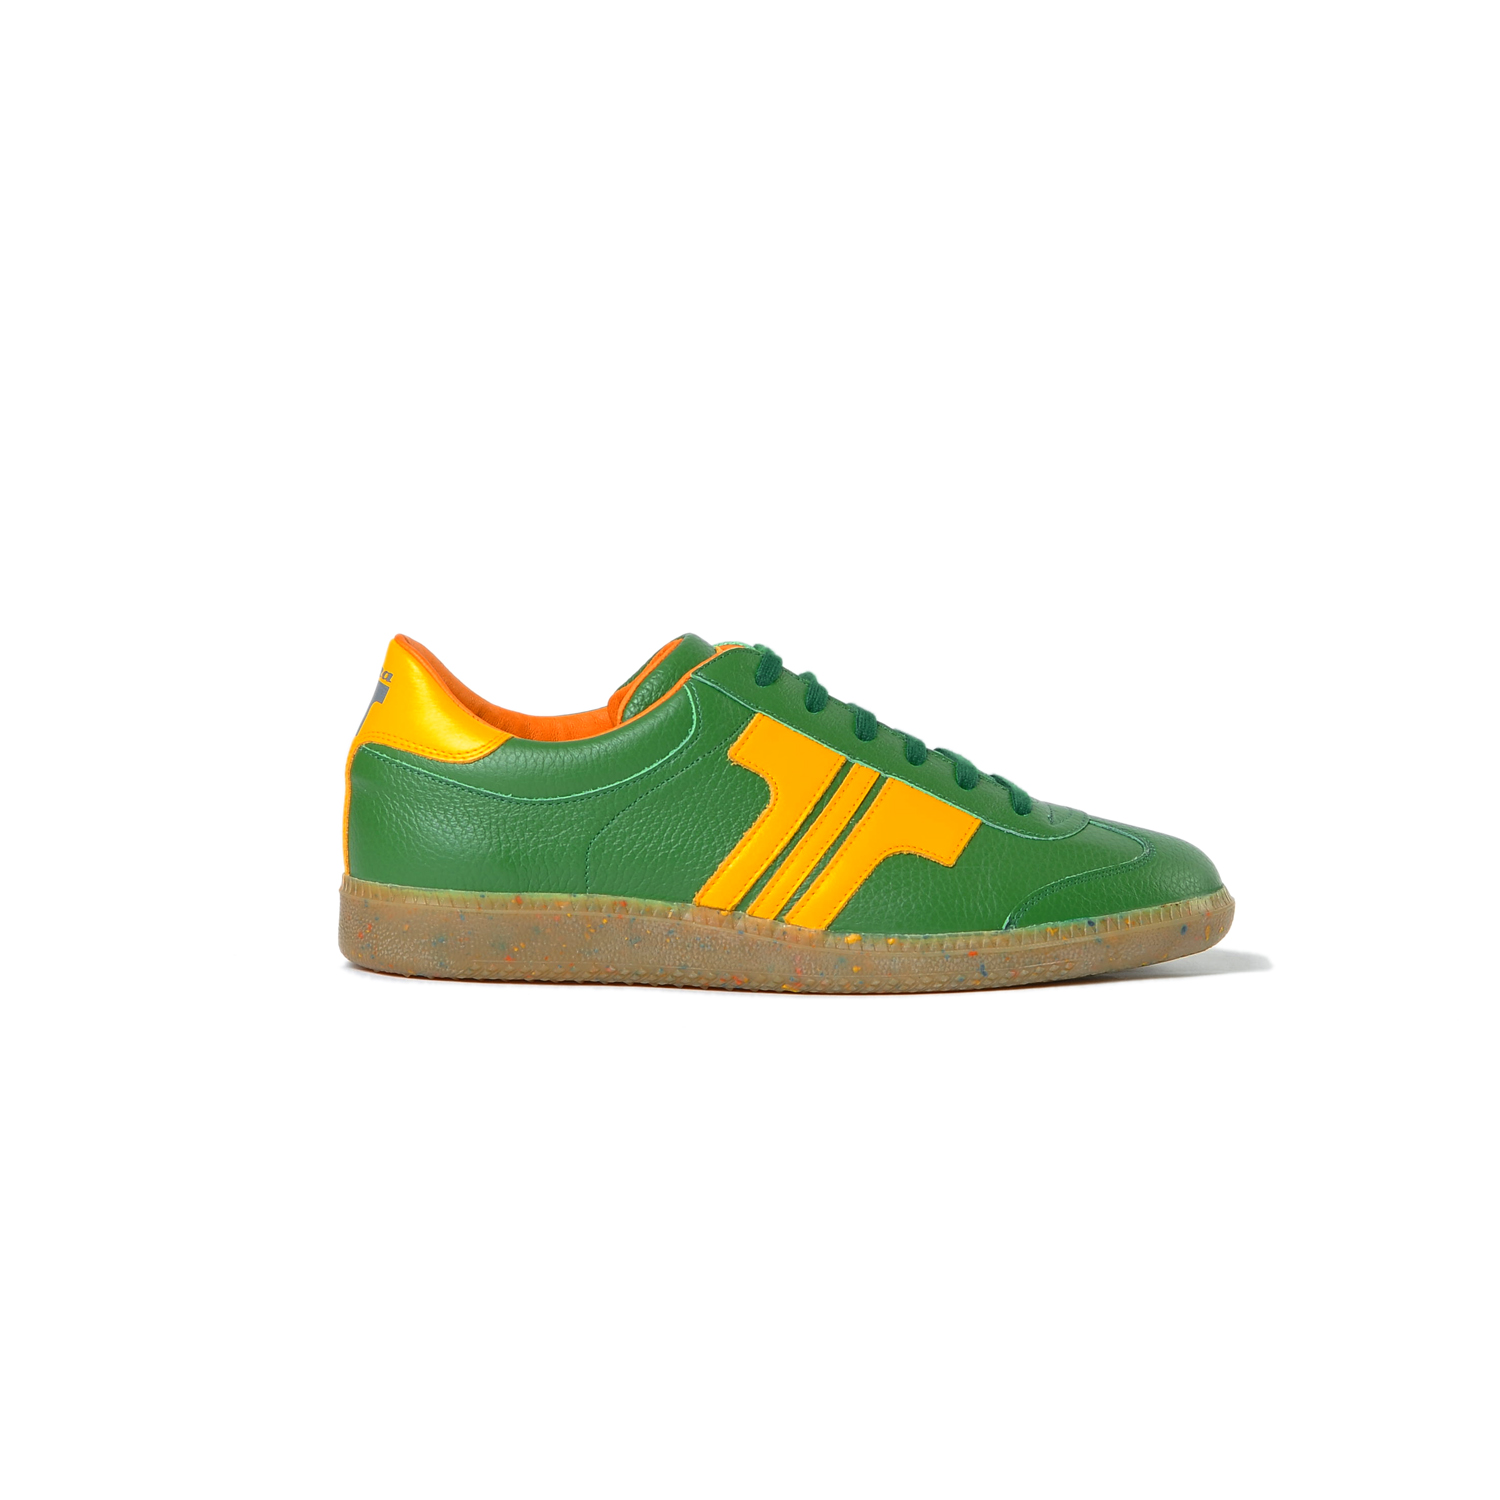 Tisza cipő - Compakt - Zöld-sárga